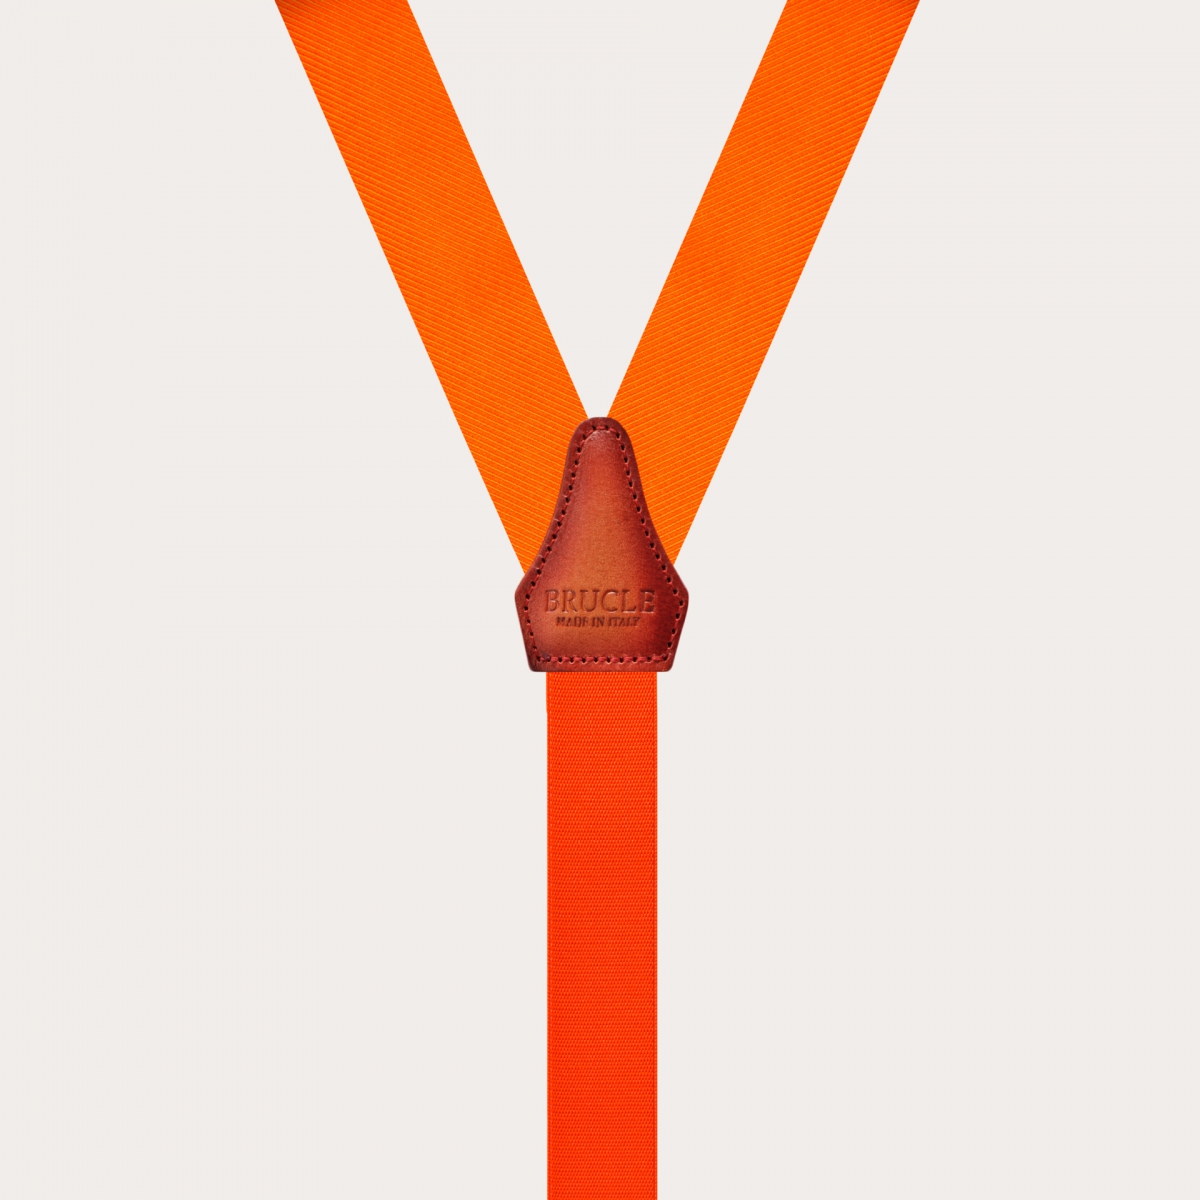 BRUCLE Bretelle strette arancioni in seta con asole per bottoni